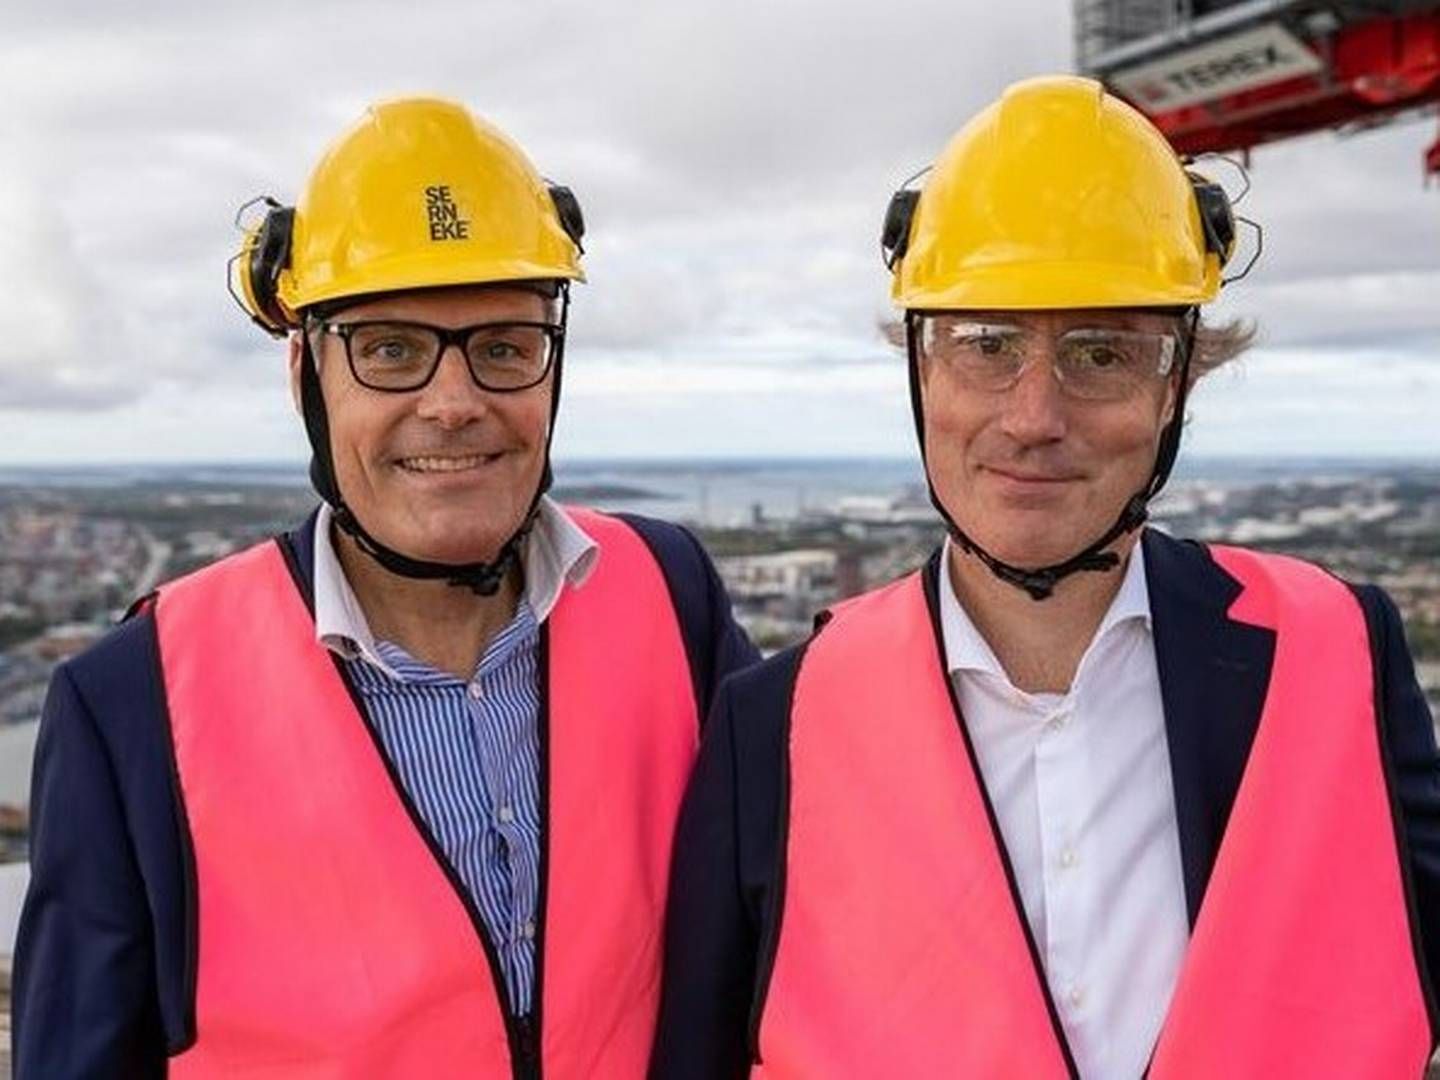 Balder-chefen Erik Selin (th.) i toppen af det kommende Karlatårnet i Göteborg. Nu vil han afvikle en del af selskabets gæld, der forfalder frem til 2025. | Foto: PR / Erik Bernhardson / Serneke